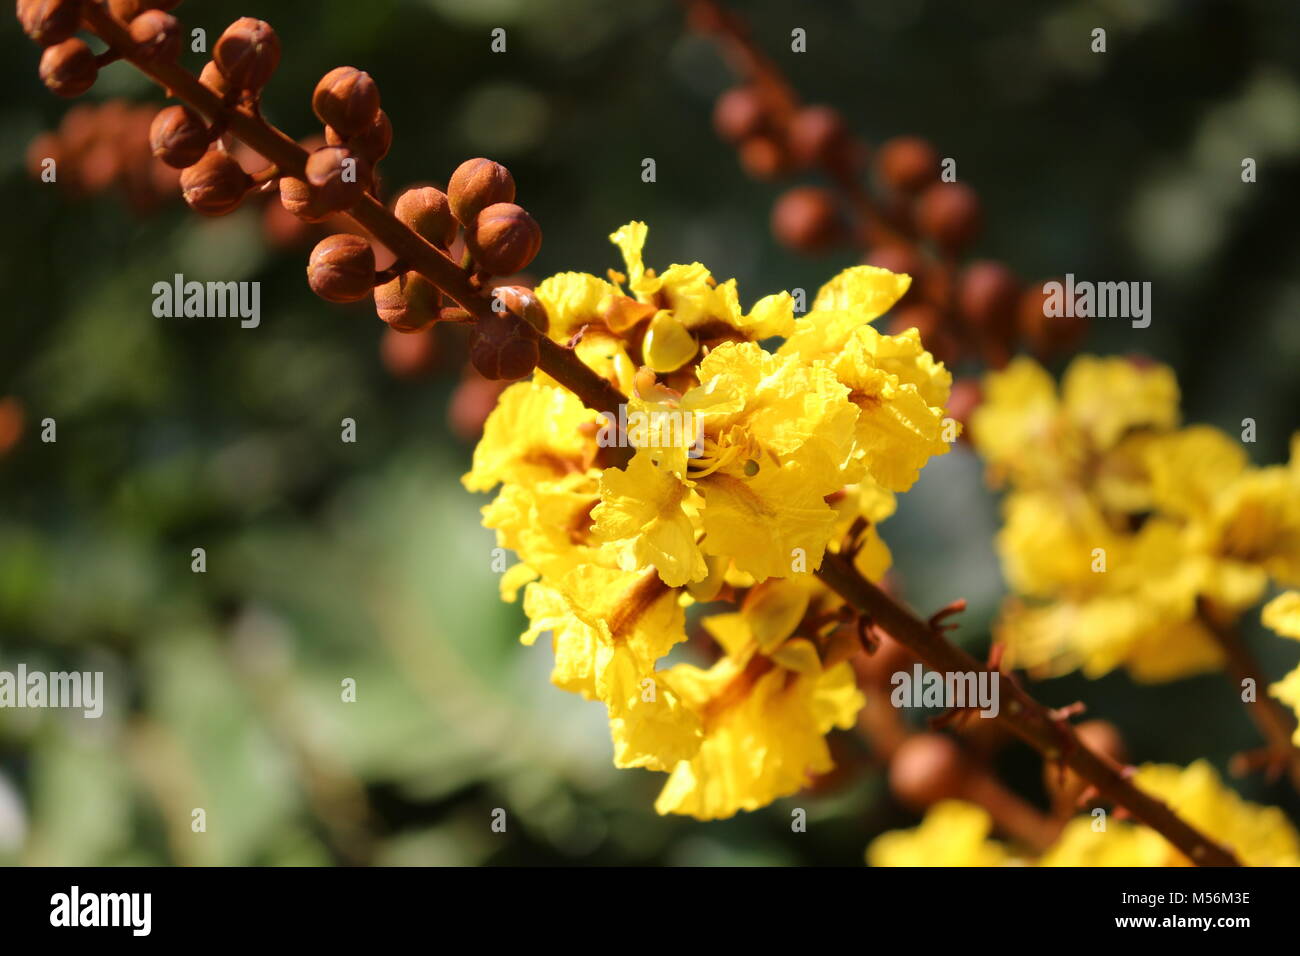 Peltophorum pterocarpum tree flowers and buds view in the garden Stock Photo